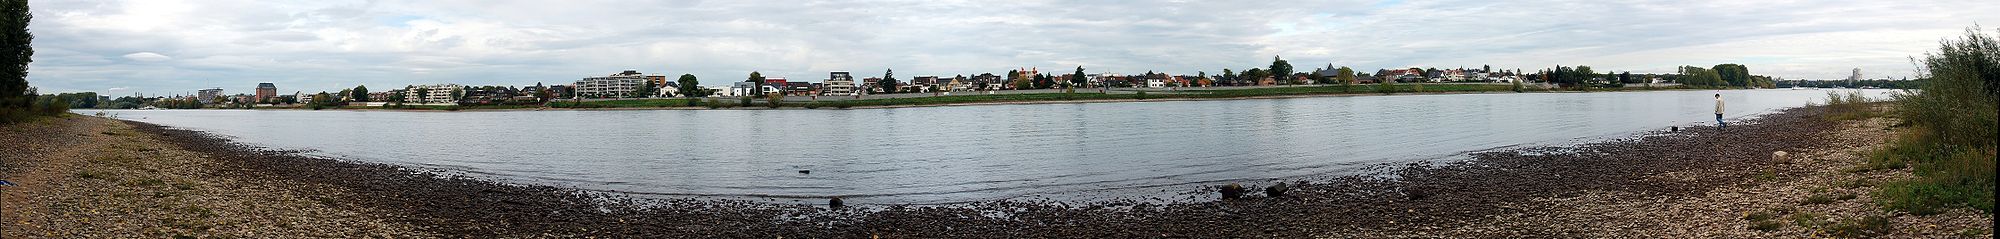 Ansicht von Zündorf bei Rheinkilometer 676 auf das linksseitige Ufer